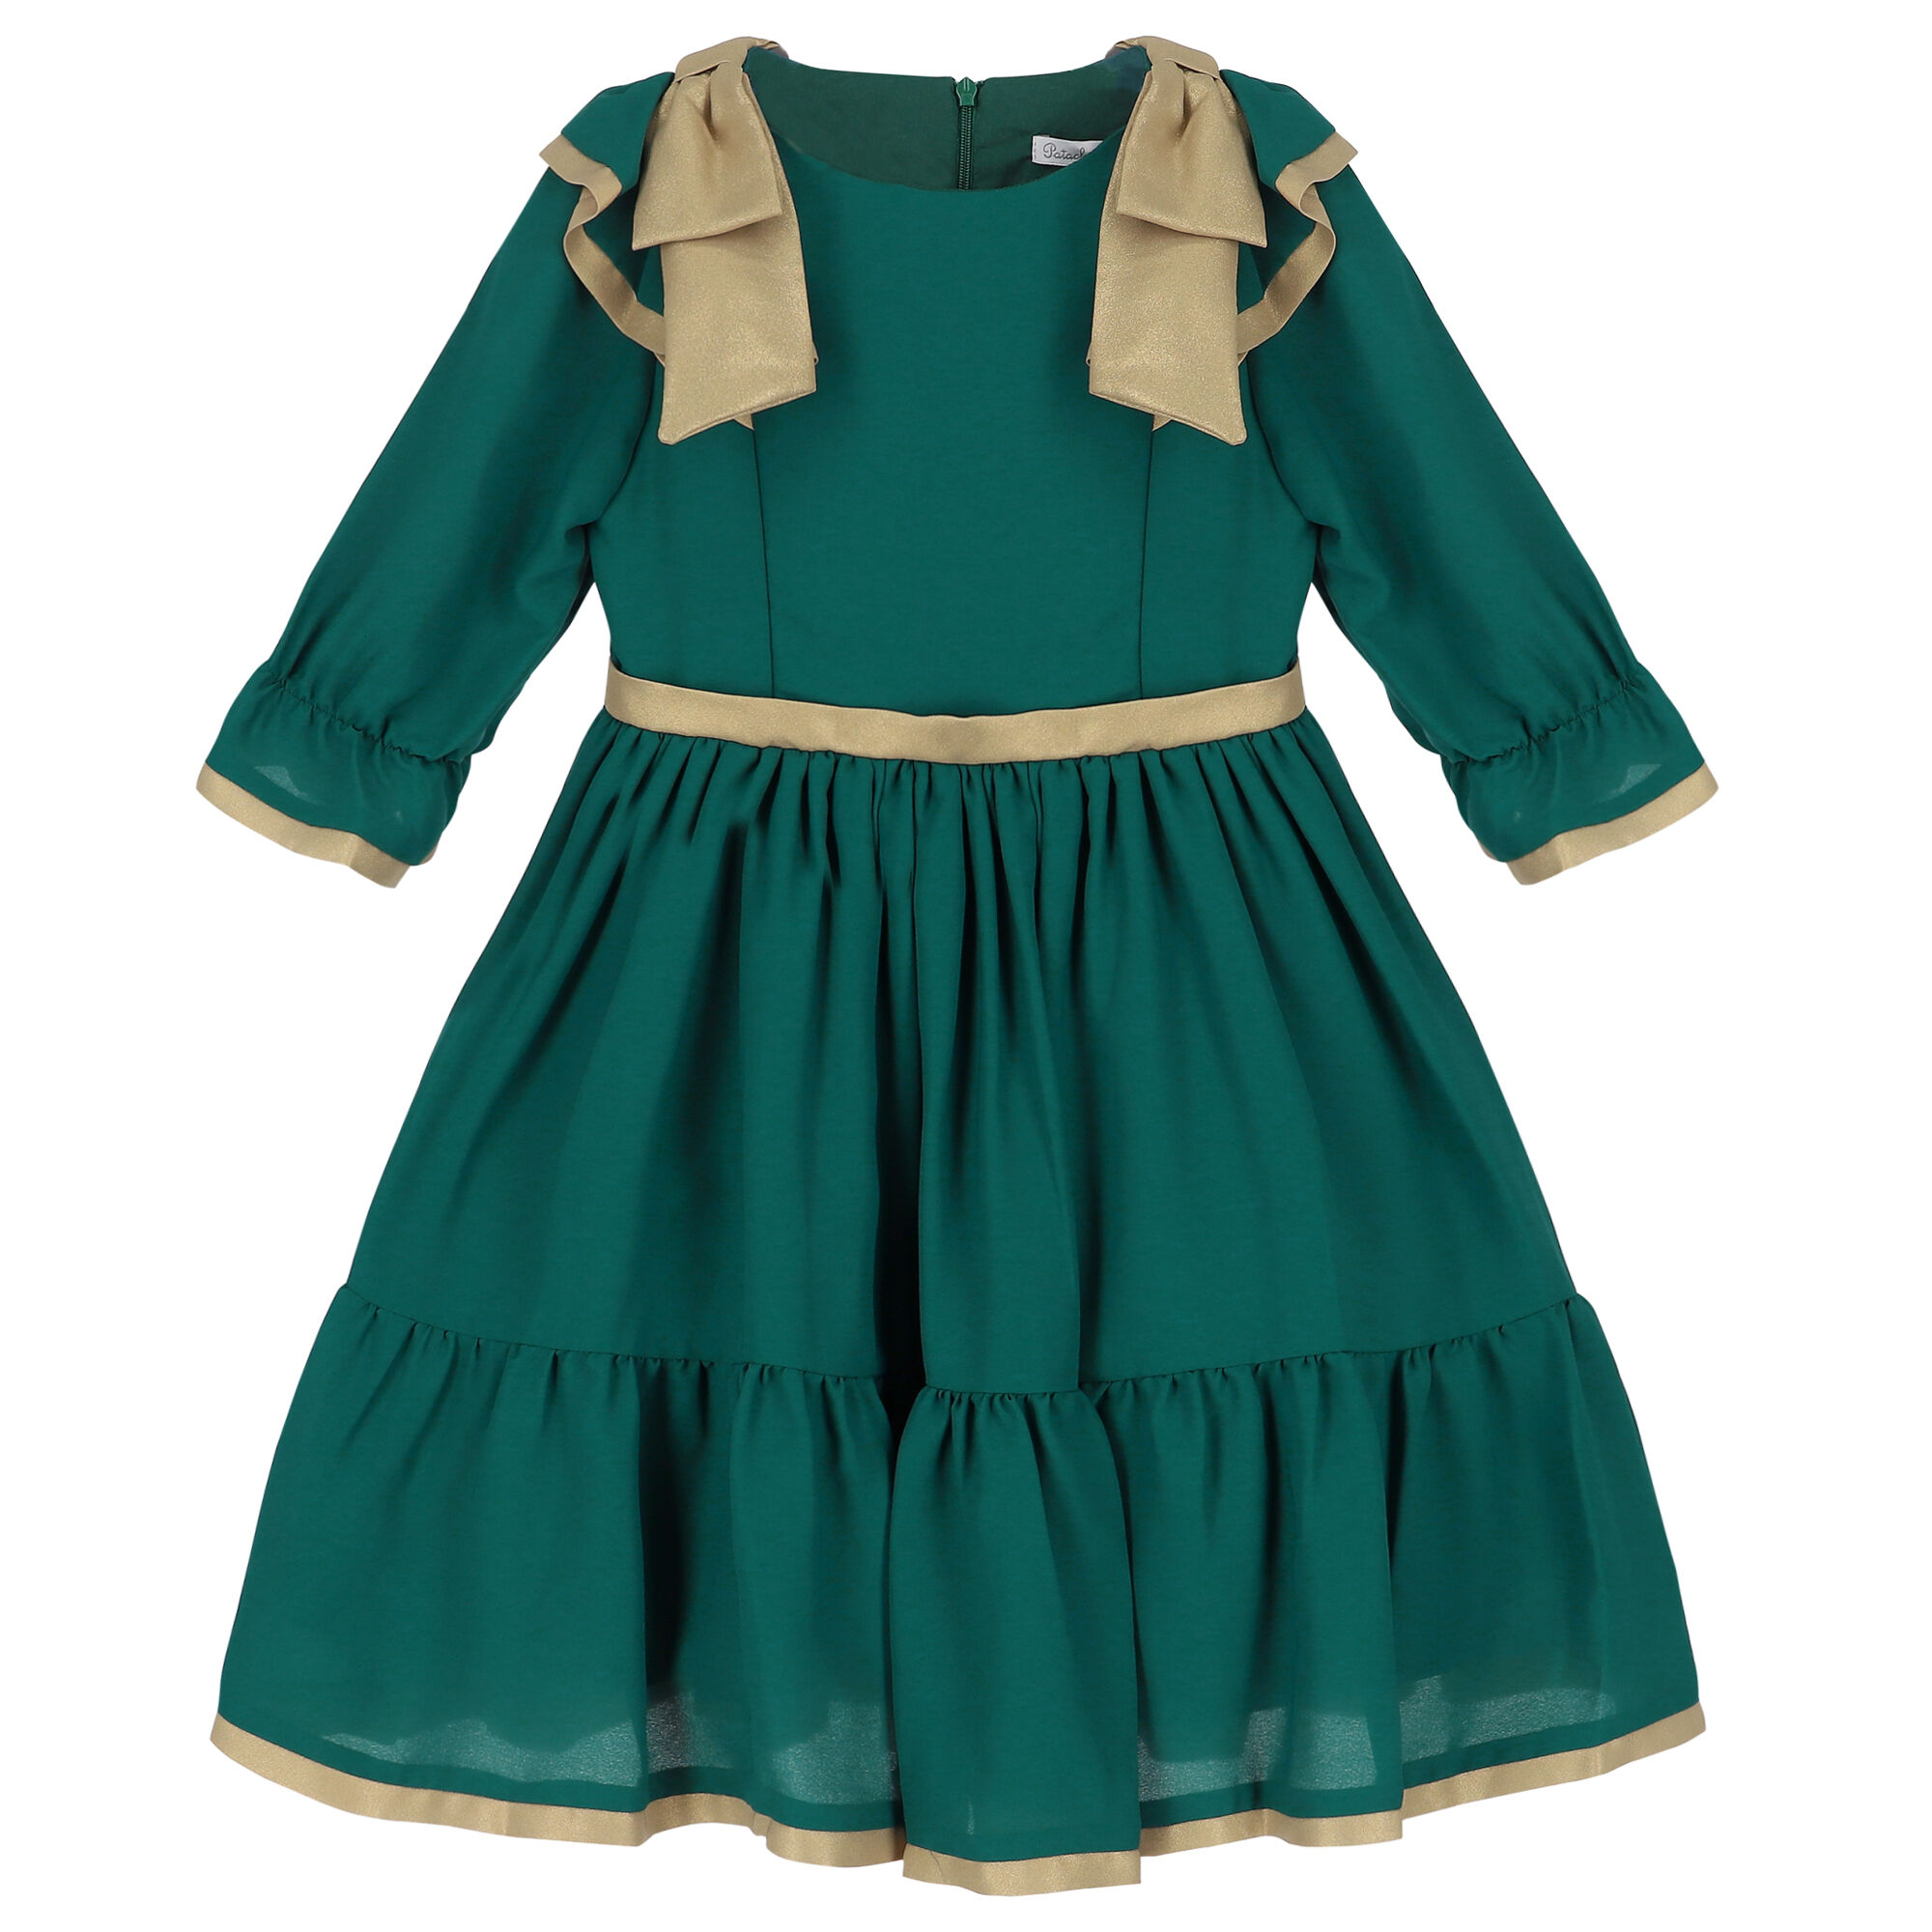 Patachou Girls Green & Gold Bow Chiffon Dress | Junior Couture USA